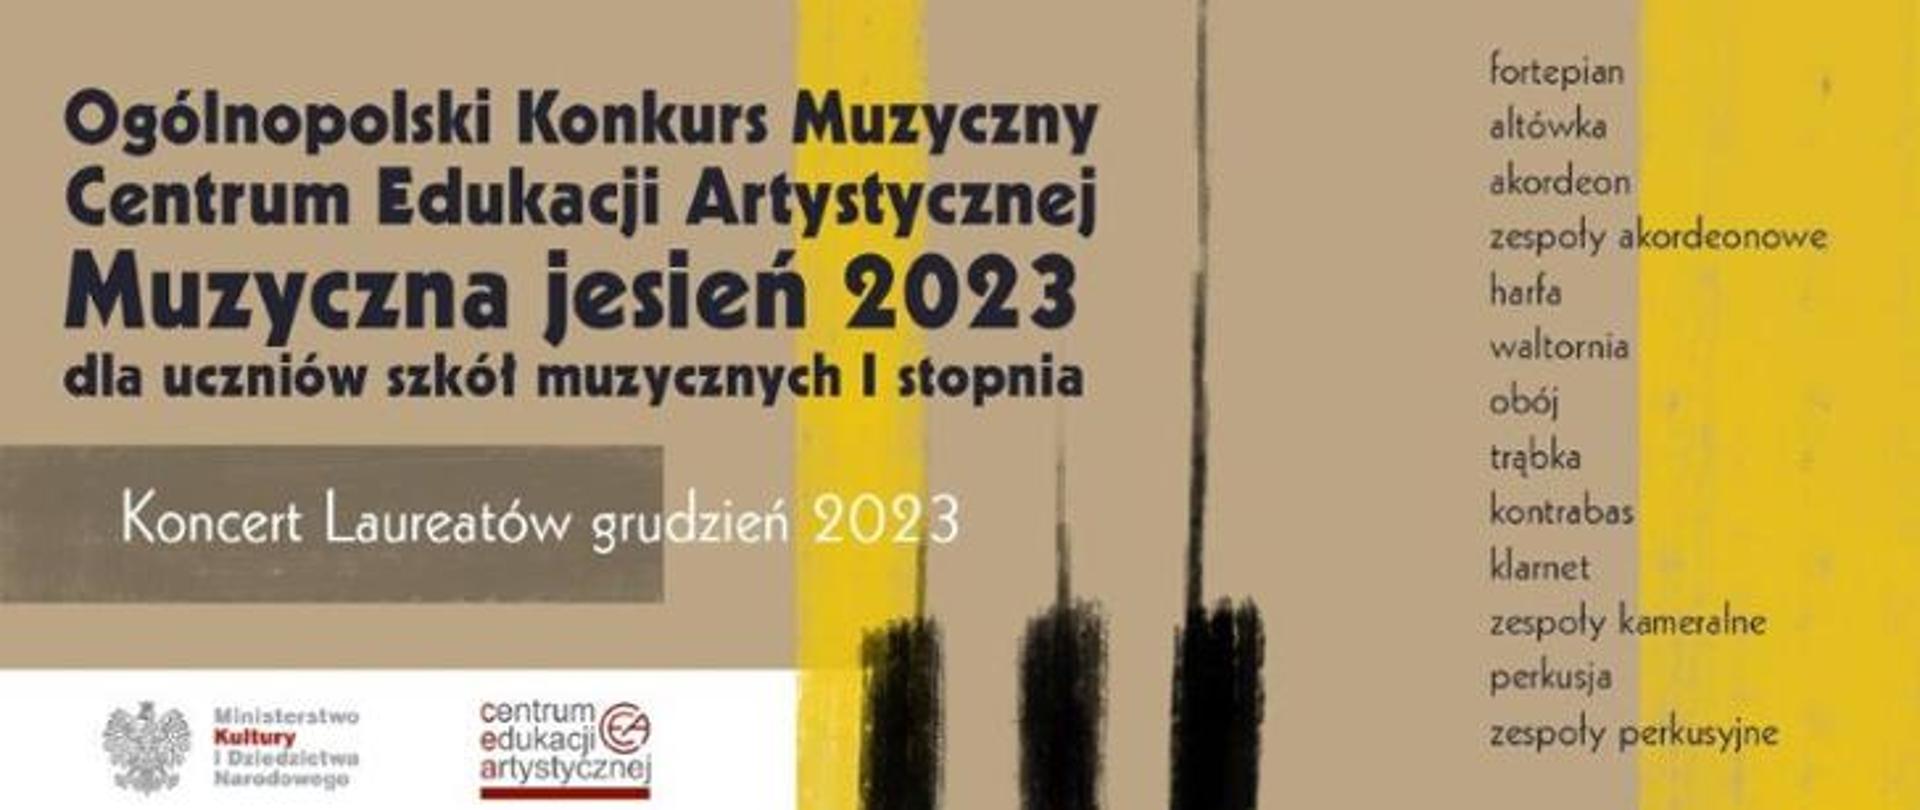 plakat CEA dotyczący Ogólnopolskiego Konkursu Muzycznego CEA "Muzyczna jesień 2023"